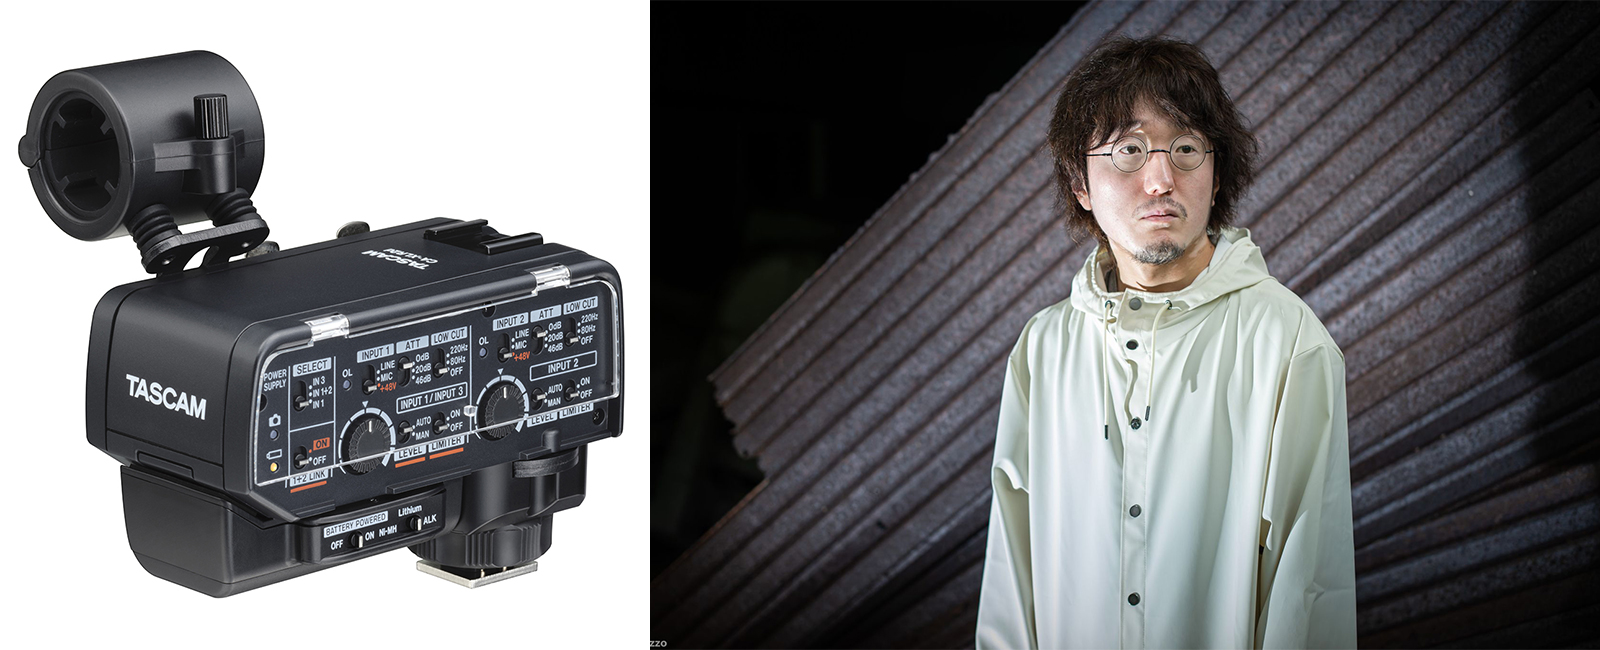 映画監督 太田信吾氏の考える撮影現場での機材運用と軽量化。ミラーレスカメラ対応XLRマイクアダプター『CA-XLR2d』インタビュー。